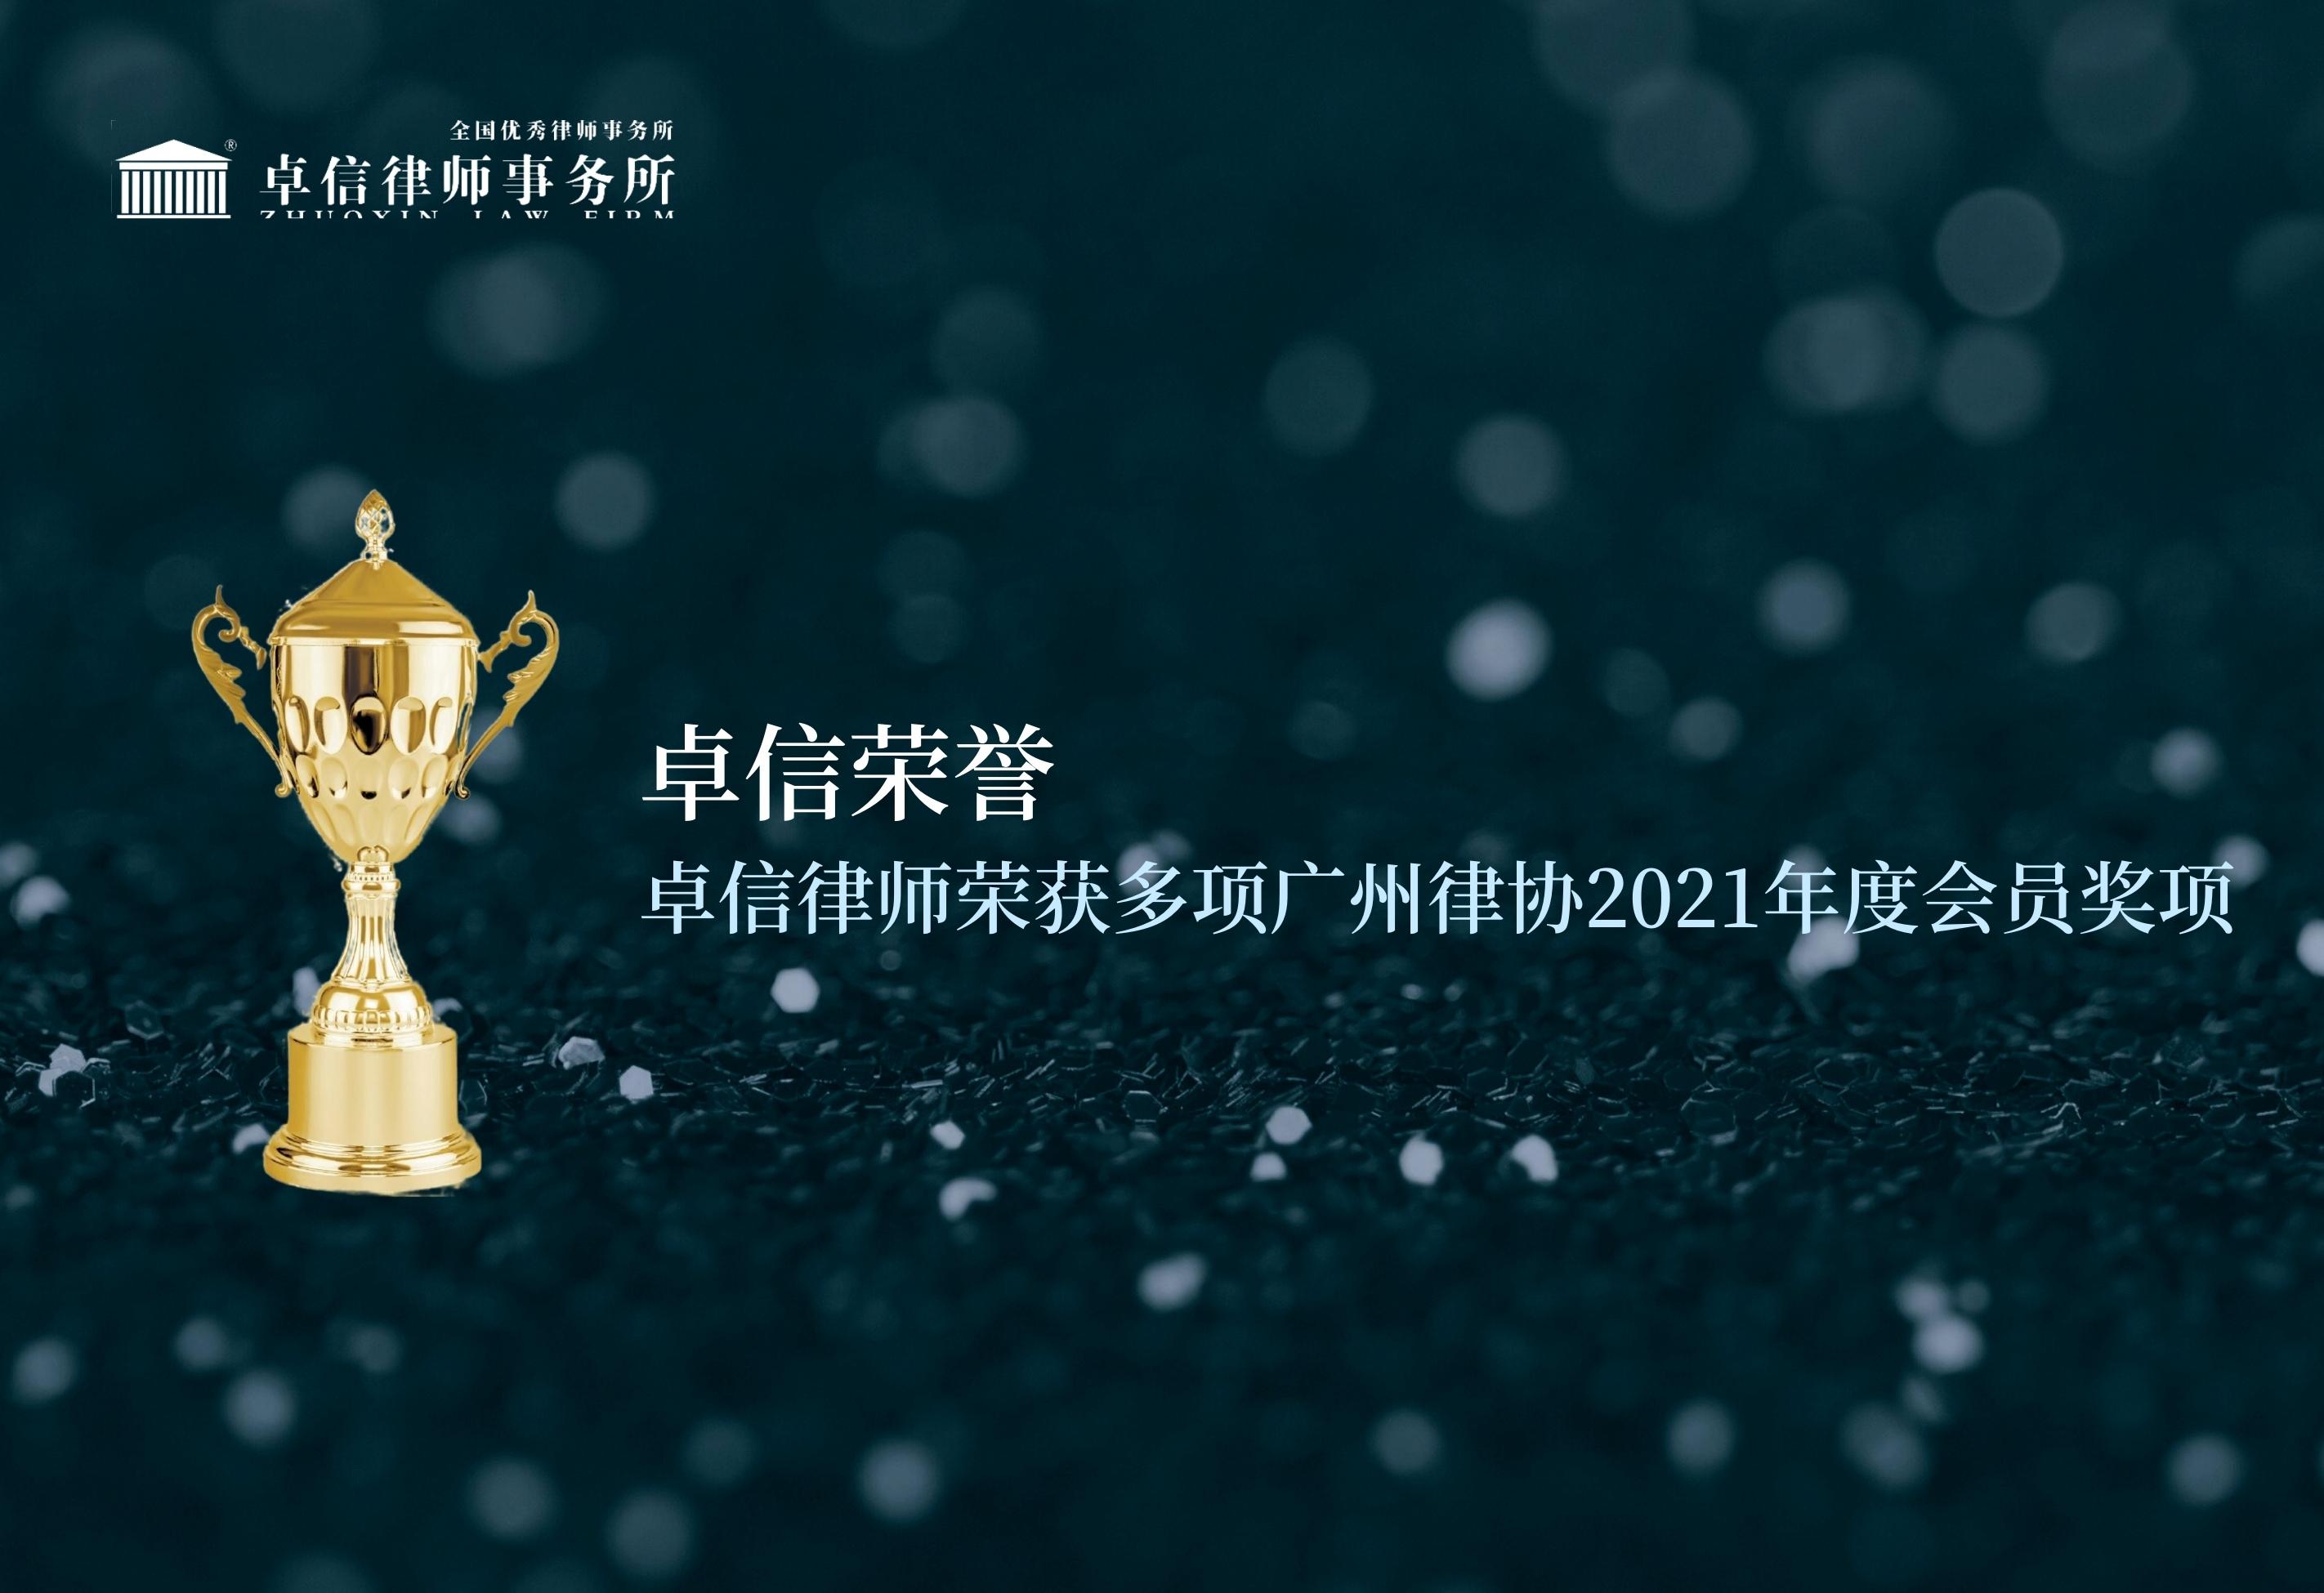 卓信律师荣获多项广州律协2021年度会员奖项